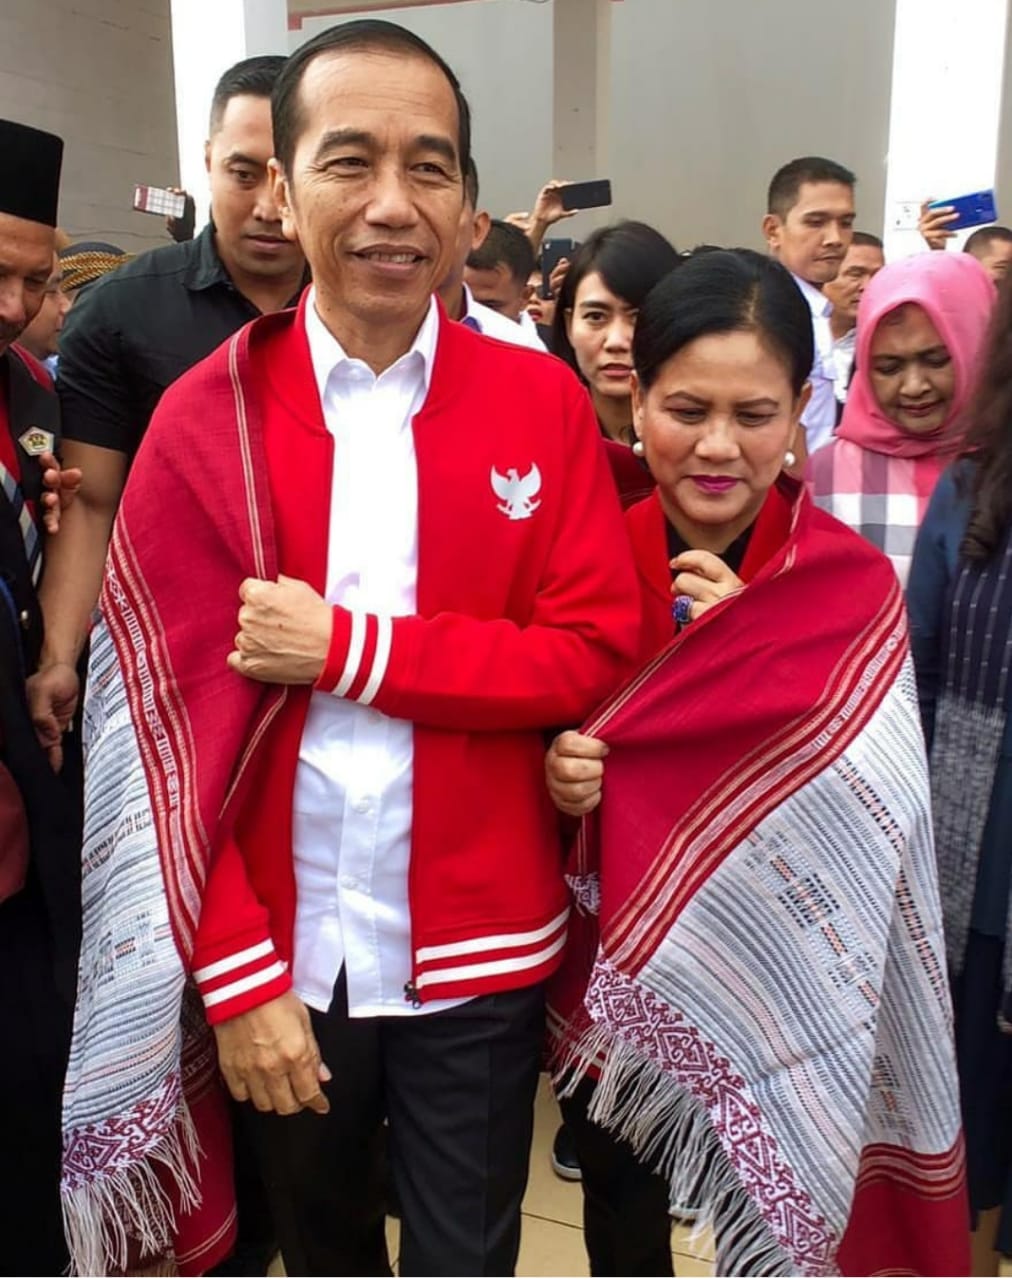 Mengintip Keistimewaan Jaket Edisi Khusus Giordano yang Dipakai Jokowi 